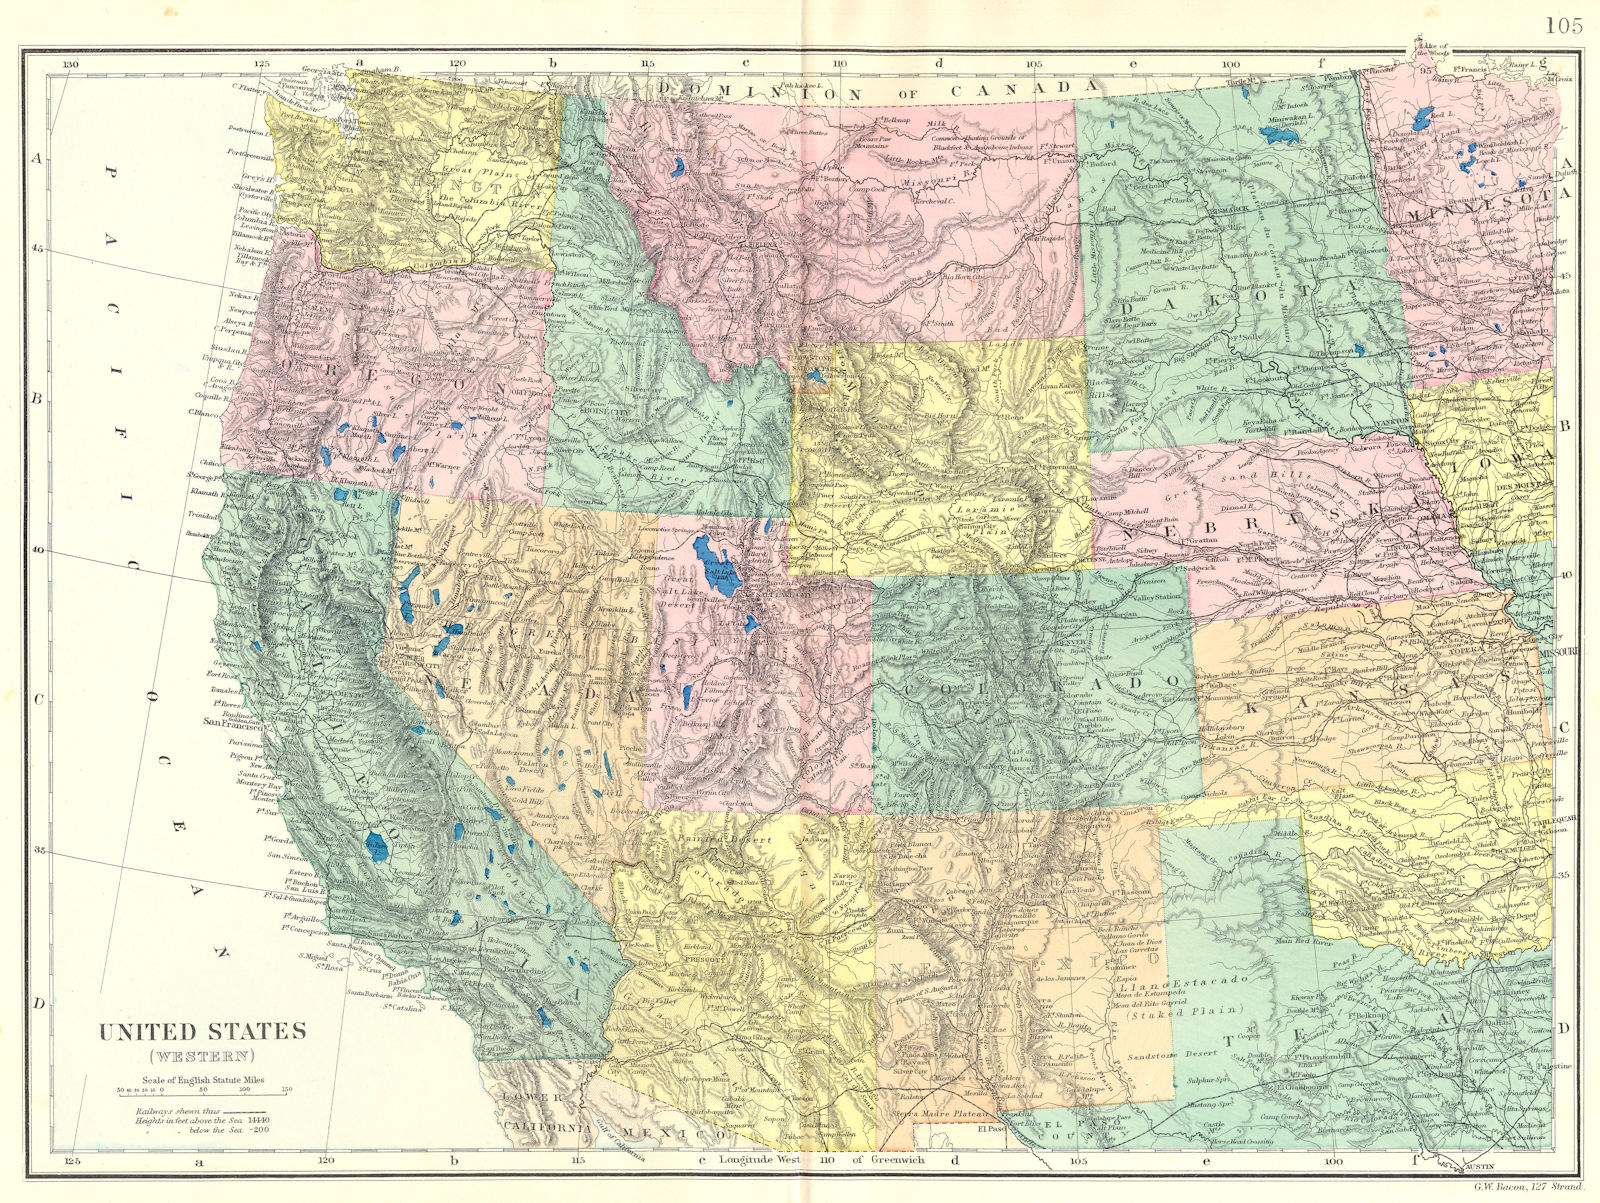 USA WEST. California Nevada Oregon Washington Idaho Wyoming etc. Bacon 1895 map